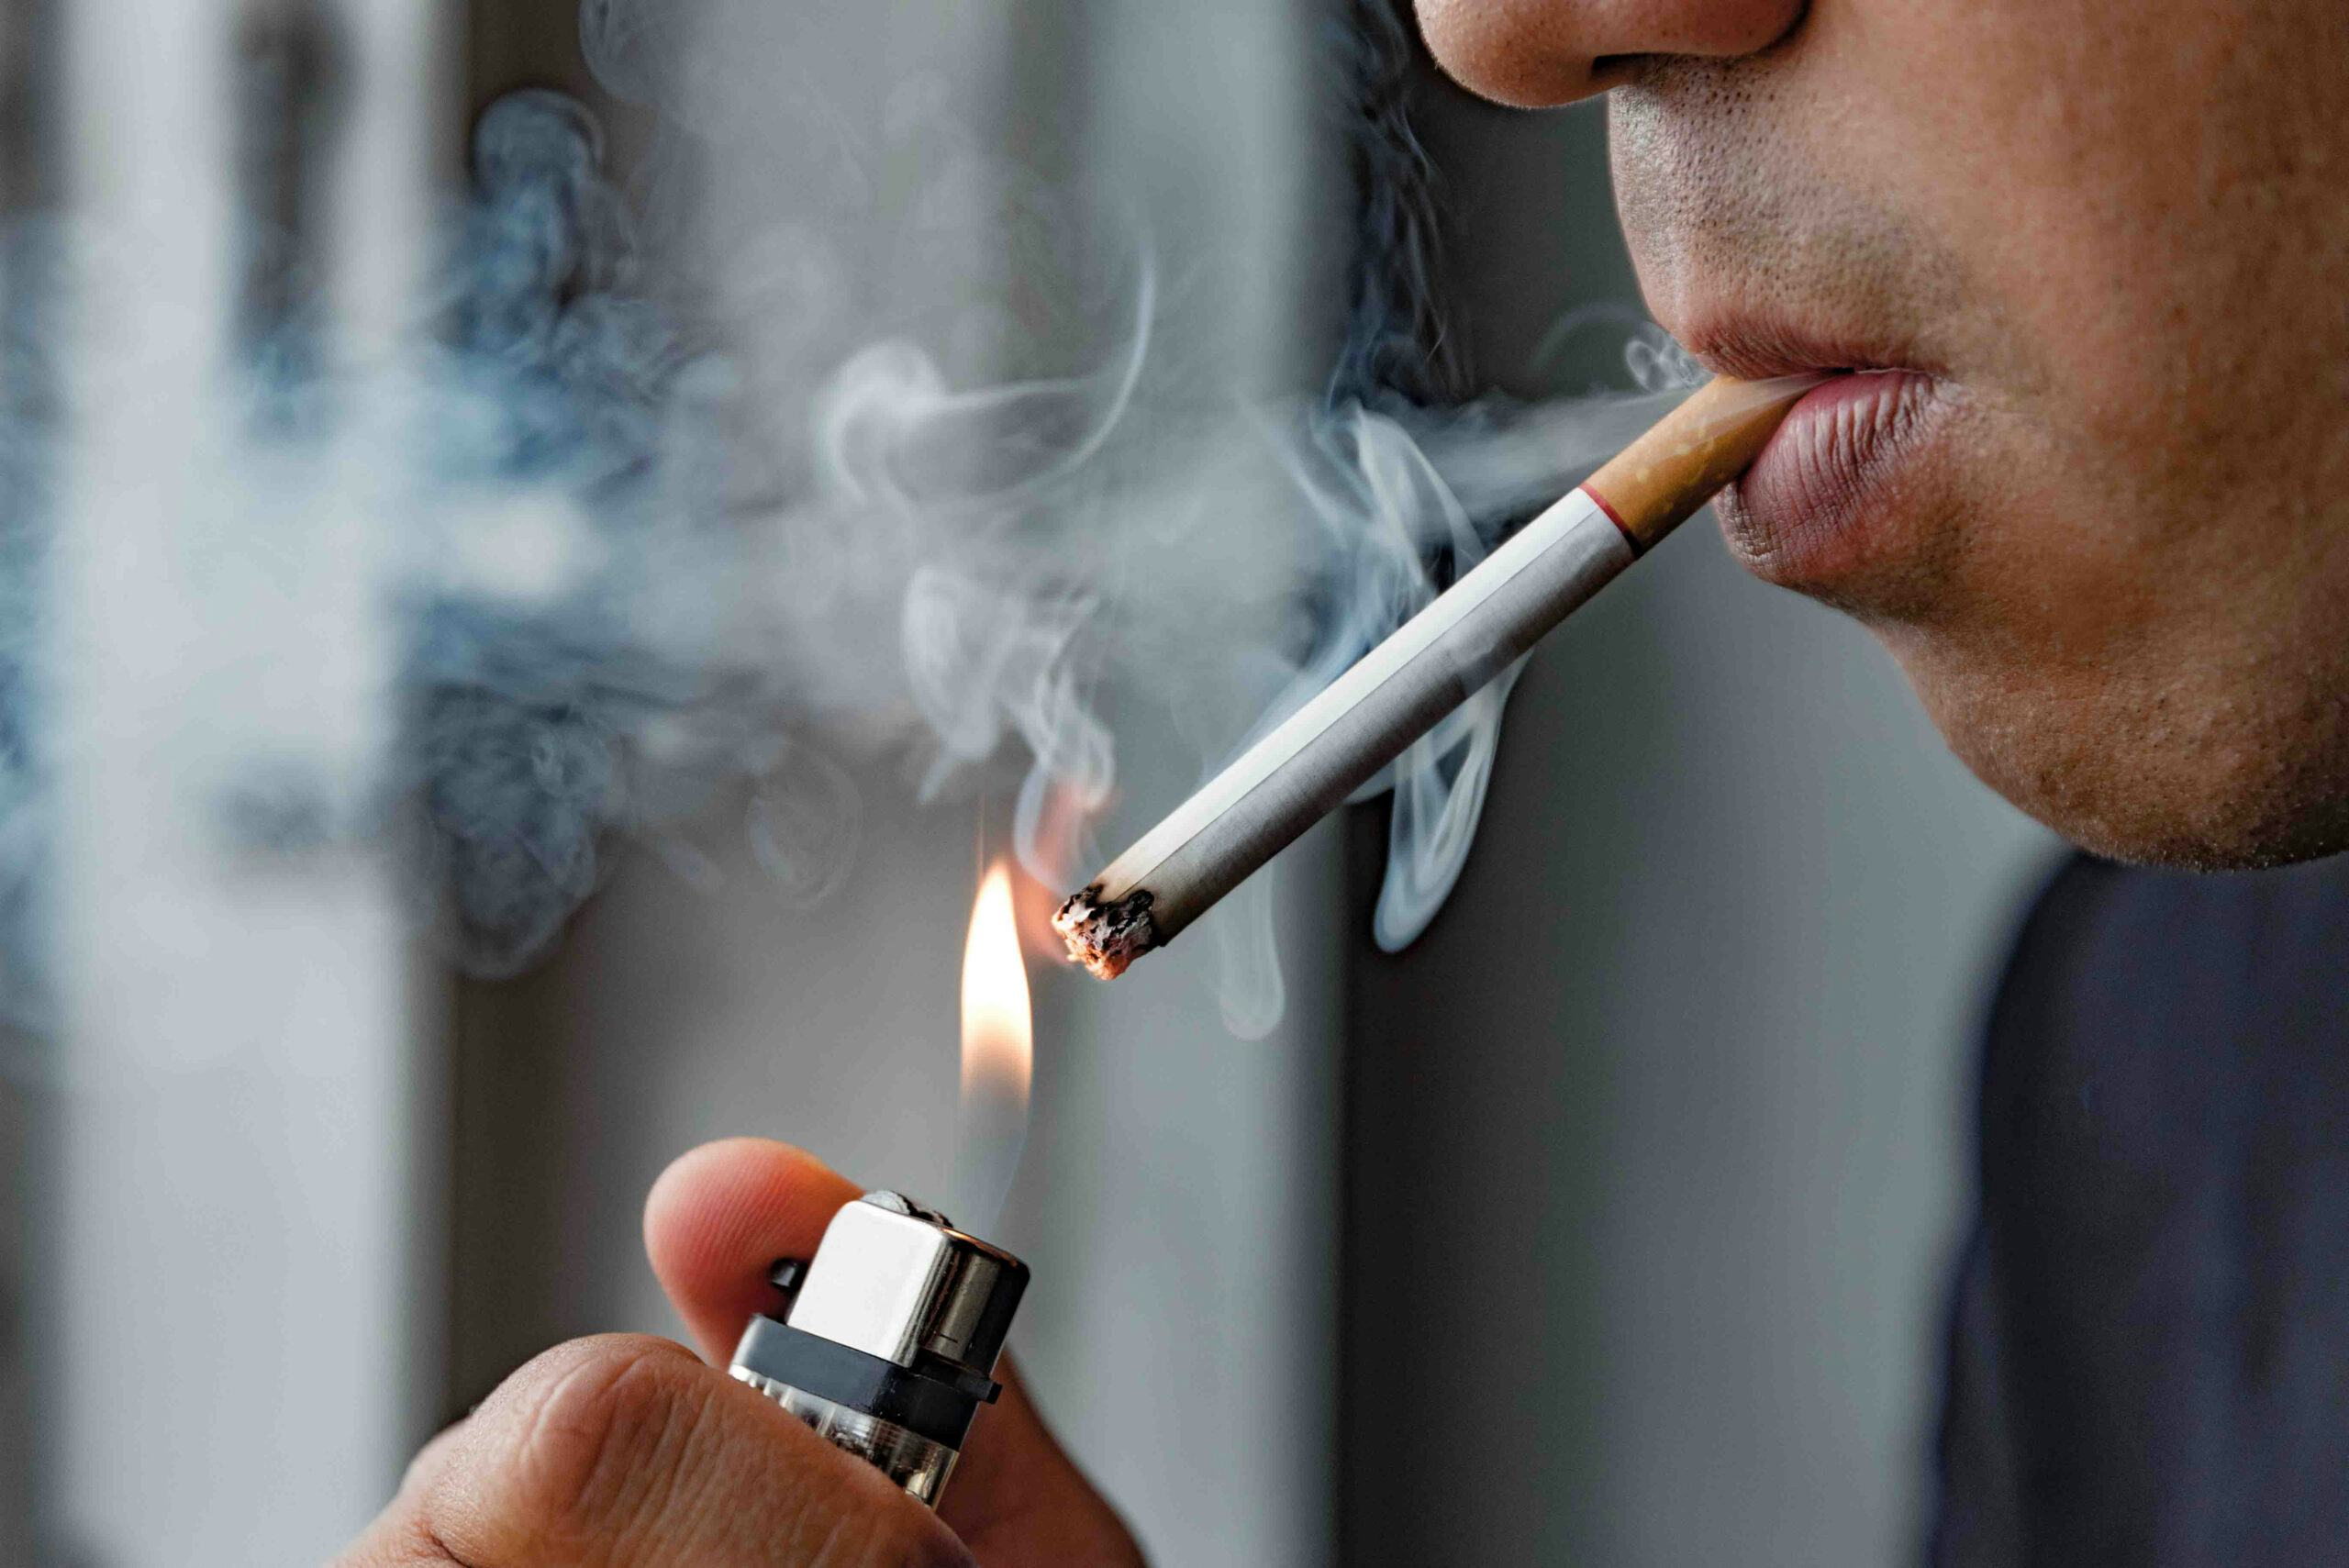 Steeds meer rookwaar komt uit het buitenland. Foto: Shutterstock